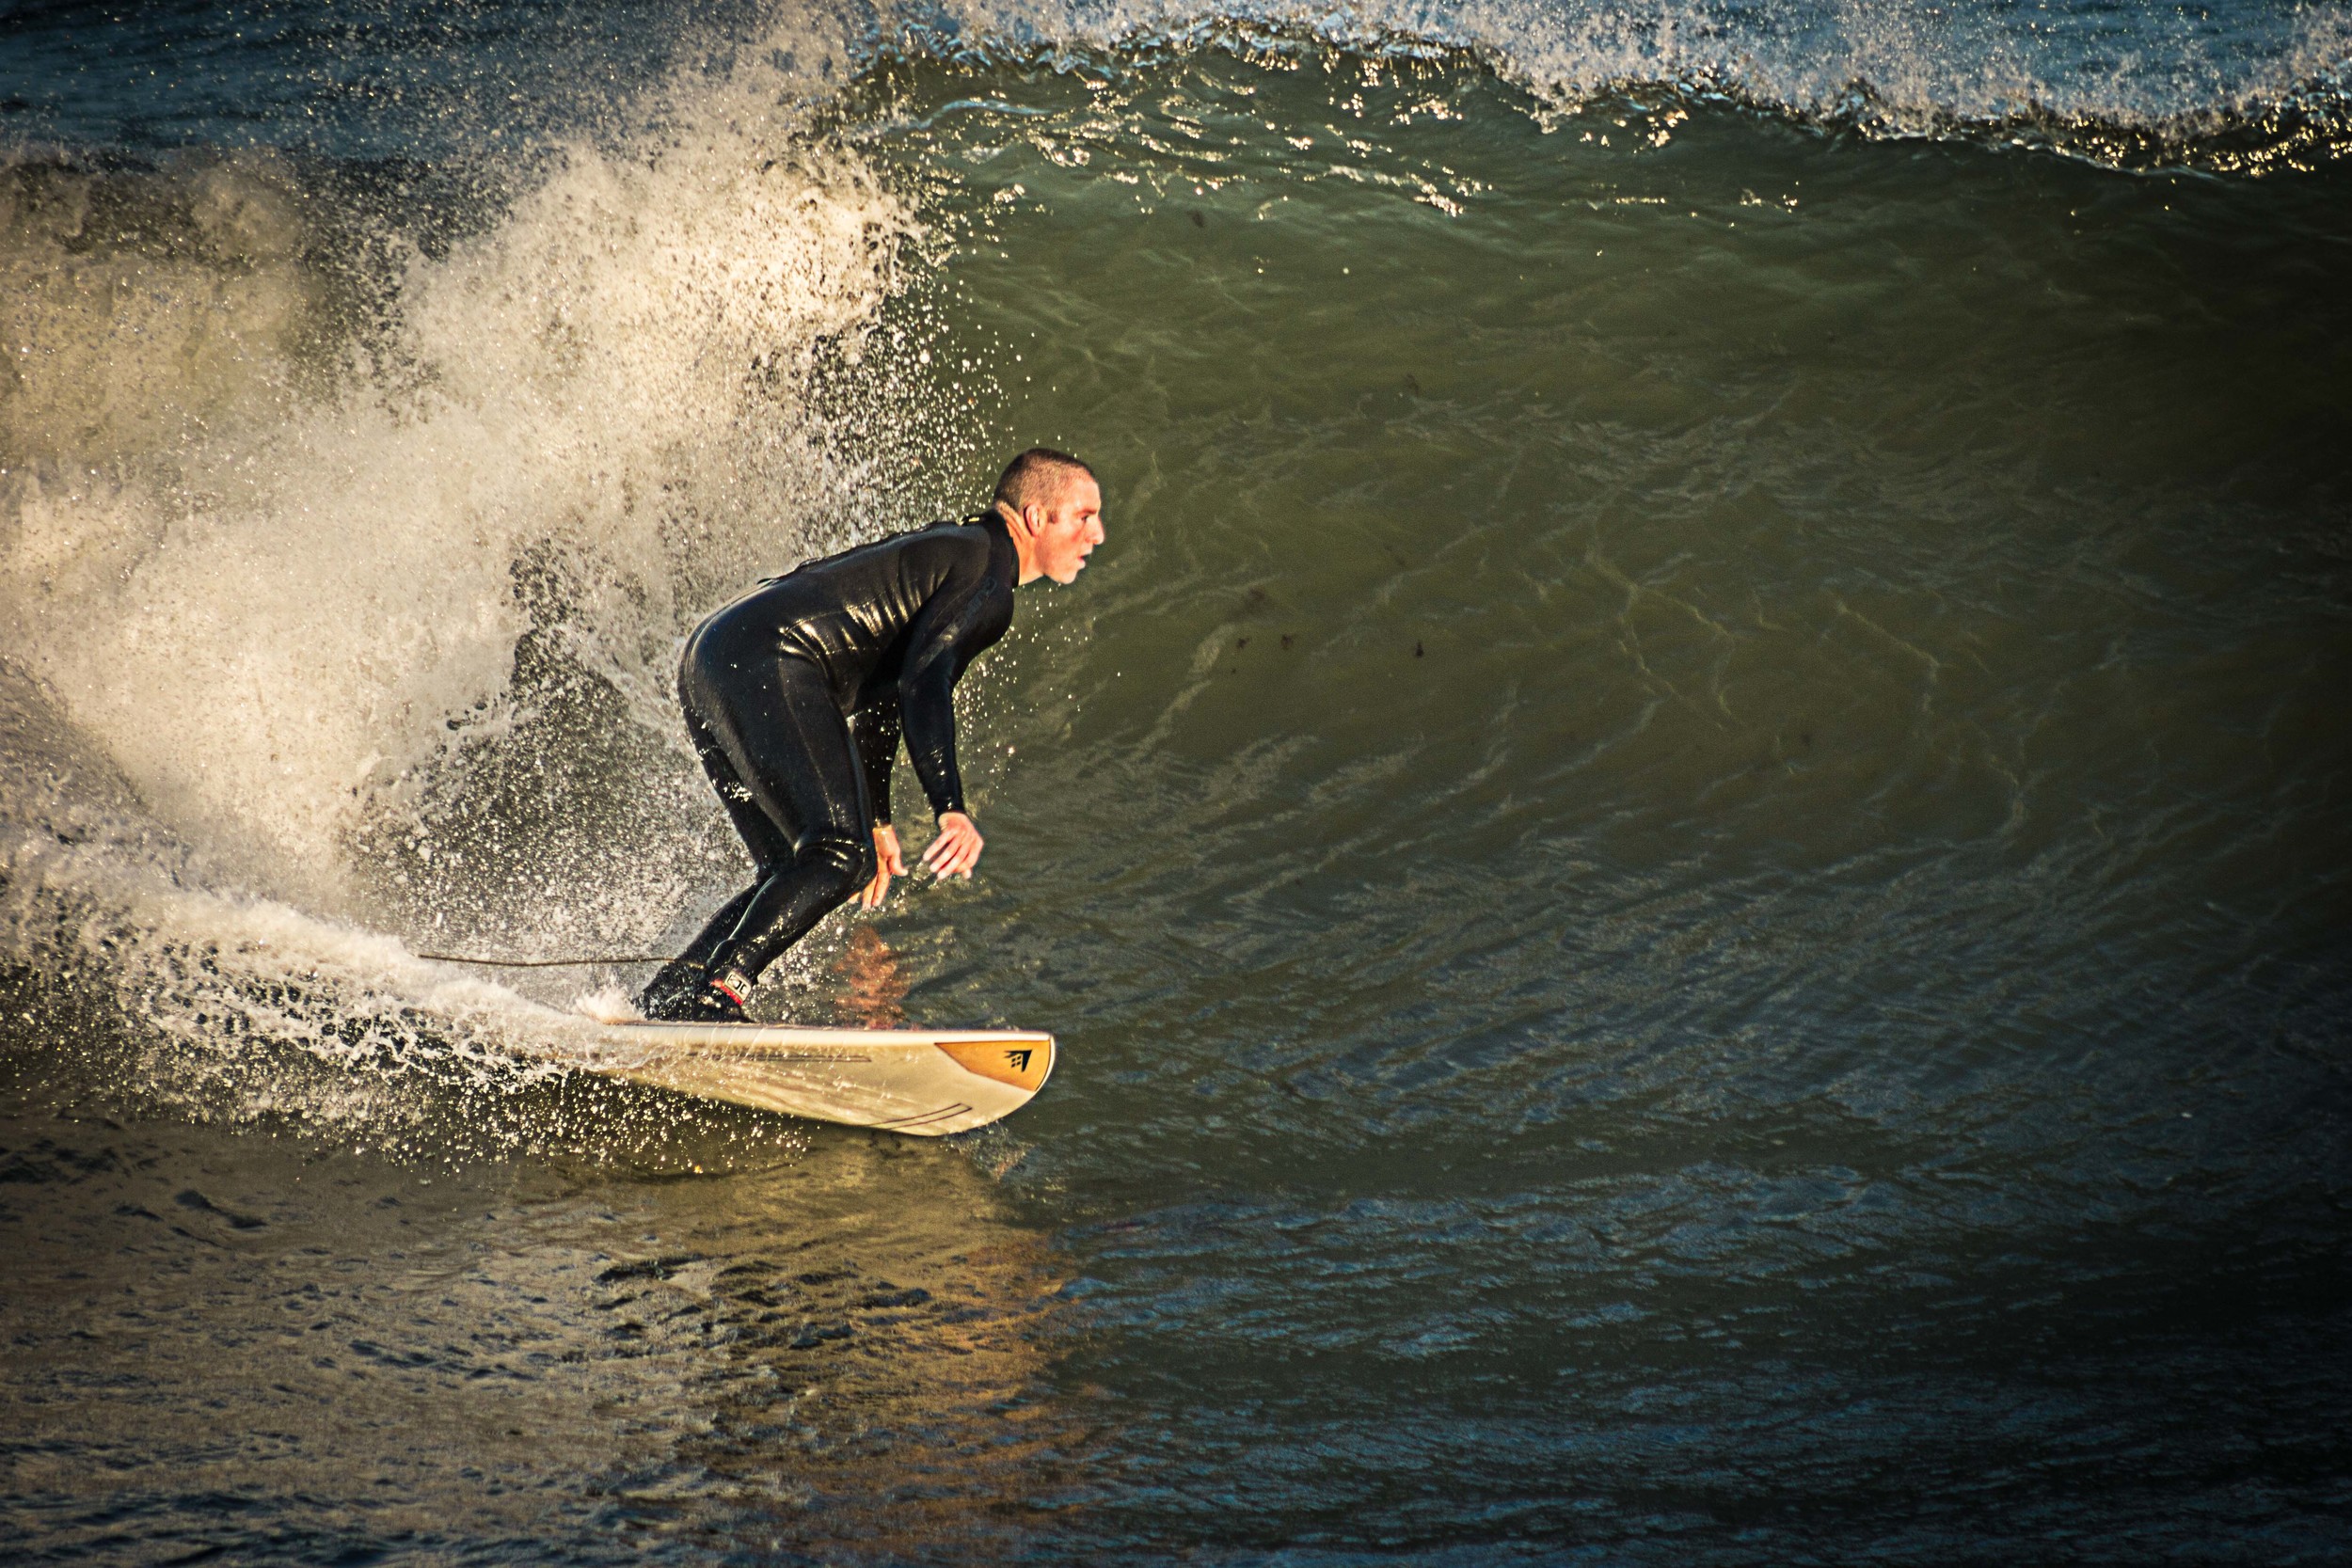 Surfer drops in